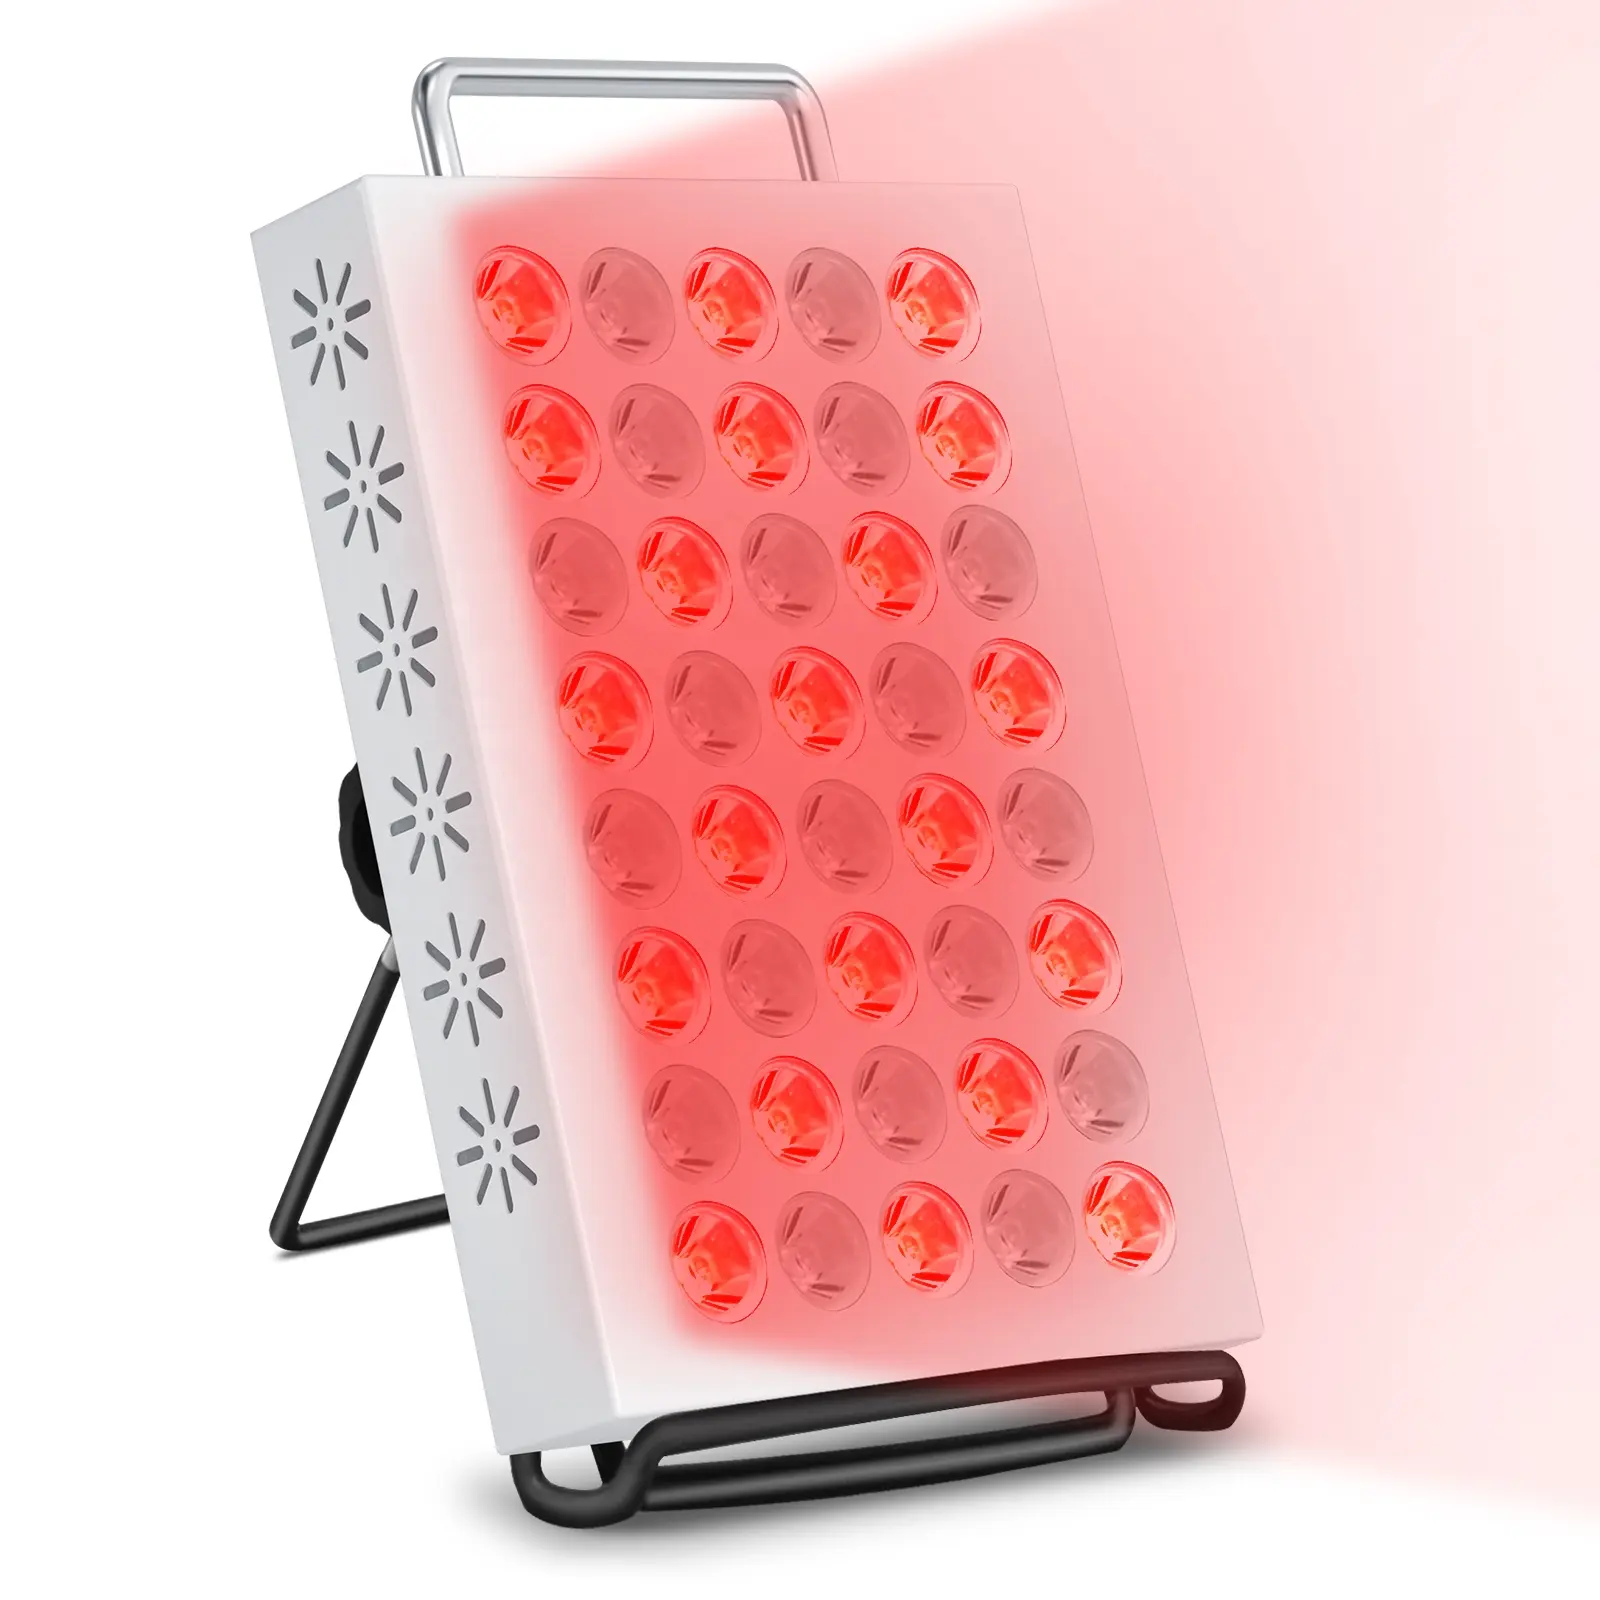 Luce rossa pannello di terapia della luce 40LED 660nm e 850nm luce combinata dispositivo di terapia della luce infrarossa per il corpo del viso di bellezza sollievo dal dolore